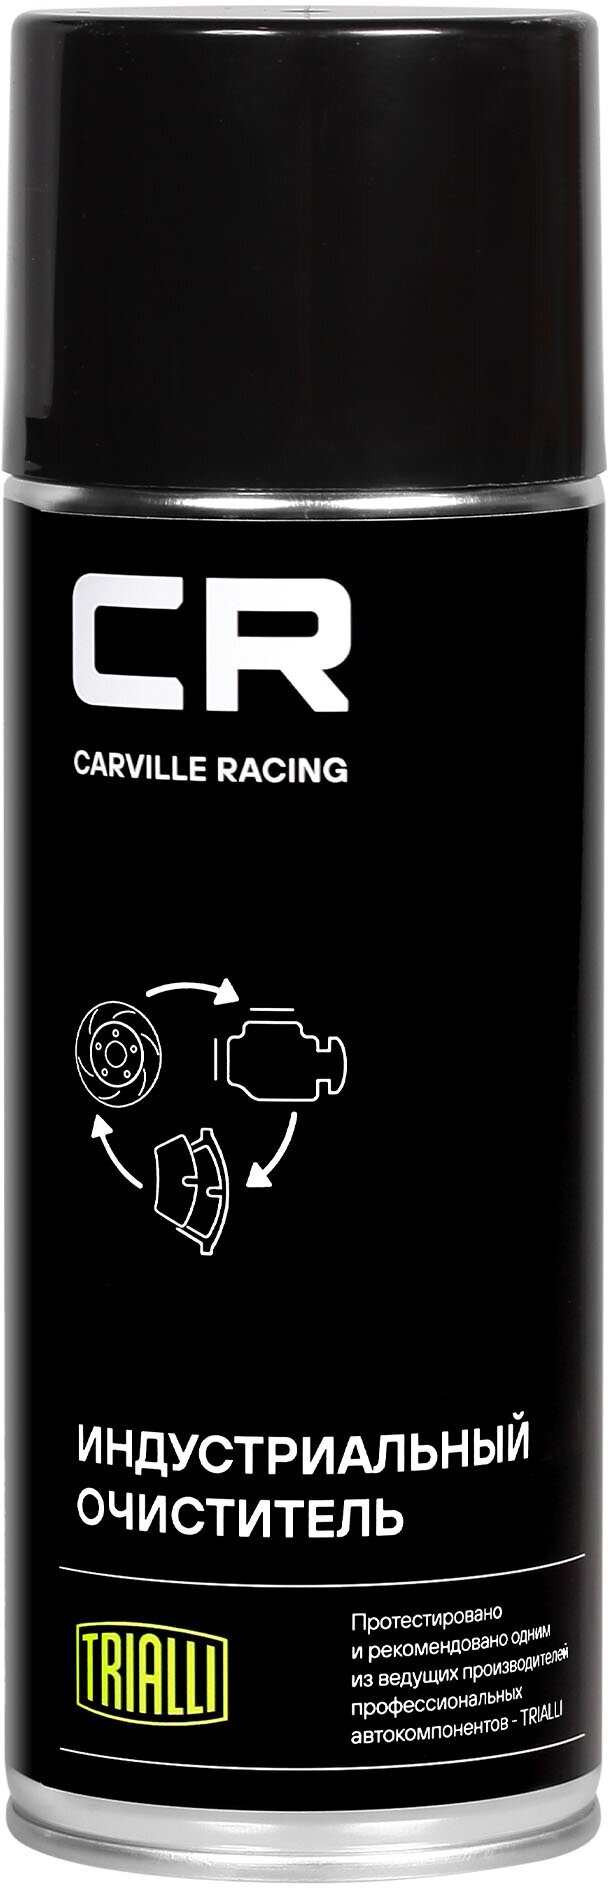 Очиститель индустриальный, аэрозоль, 520ml S7520175 Carville Racing